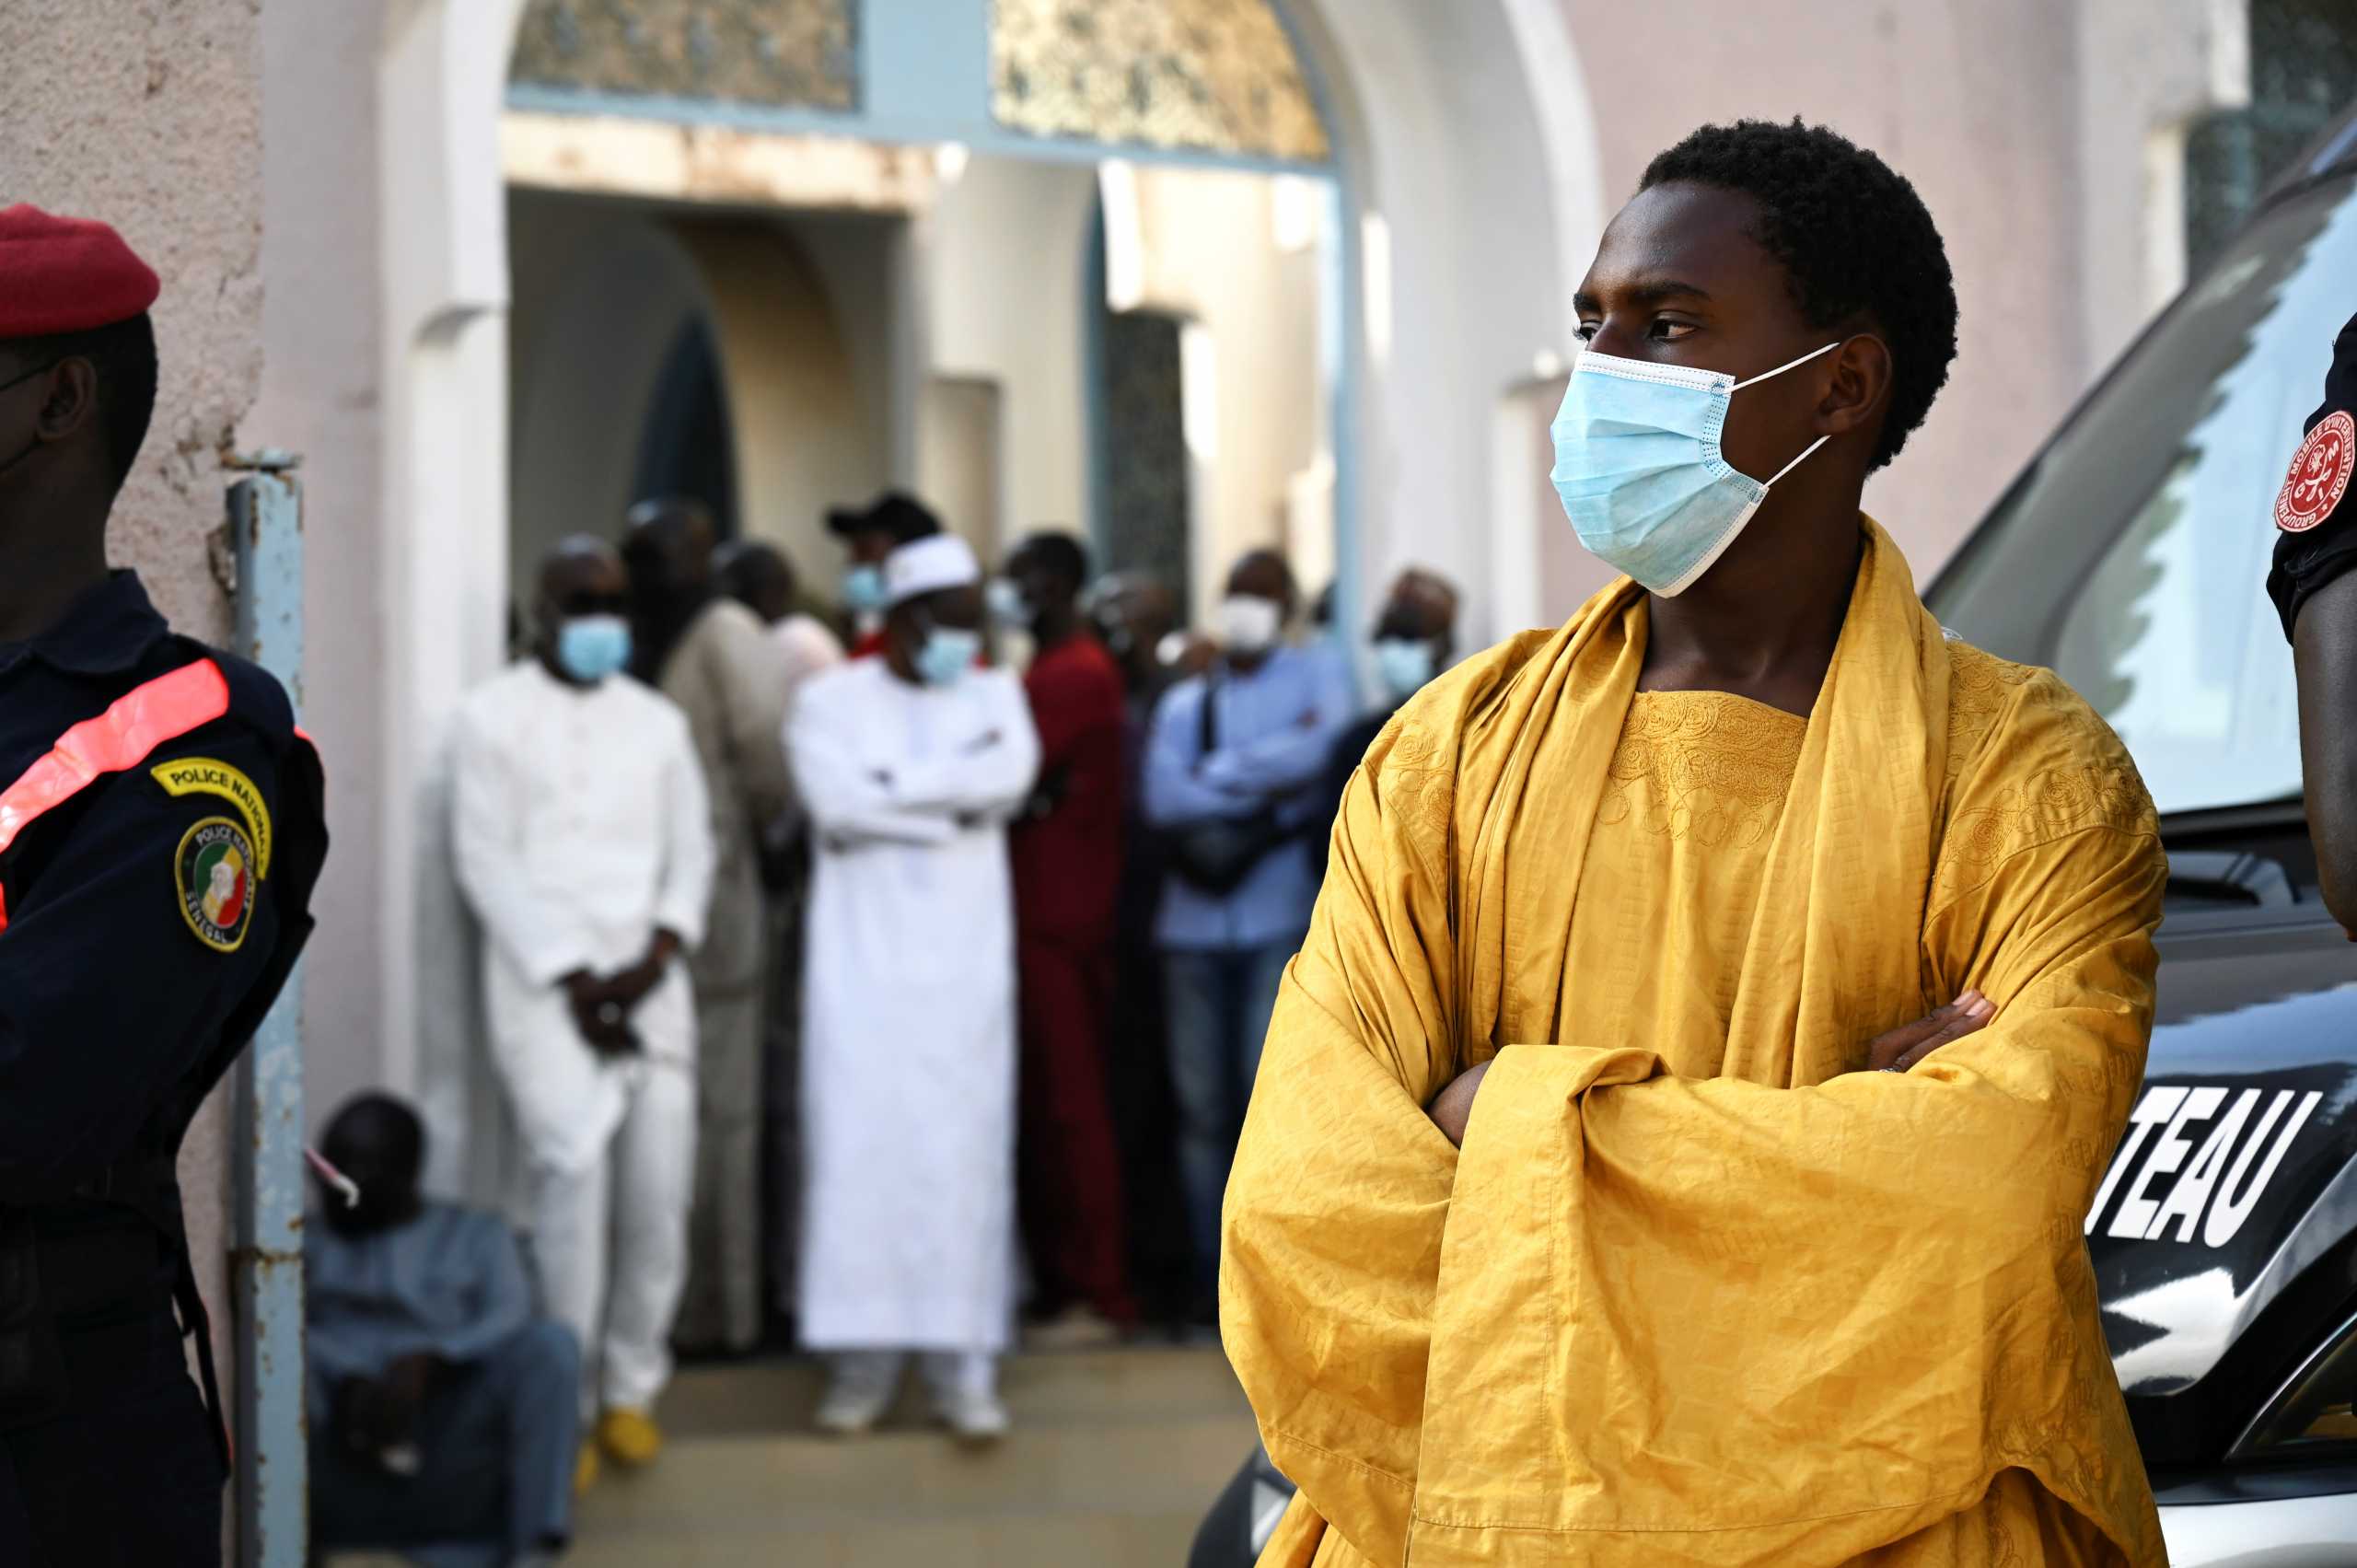 Κορονοϊός - Σενεγάλη: Καταγράφηκε το πρώτο κρούσμα της μετάλλαξης Όμικρον